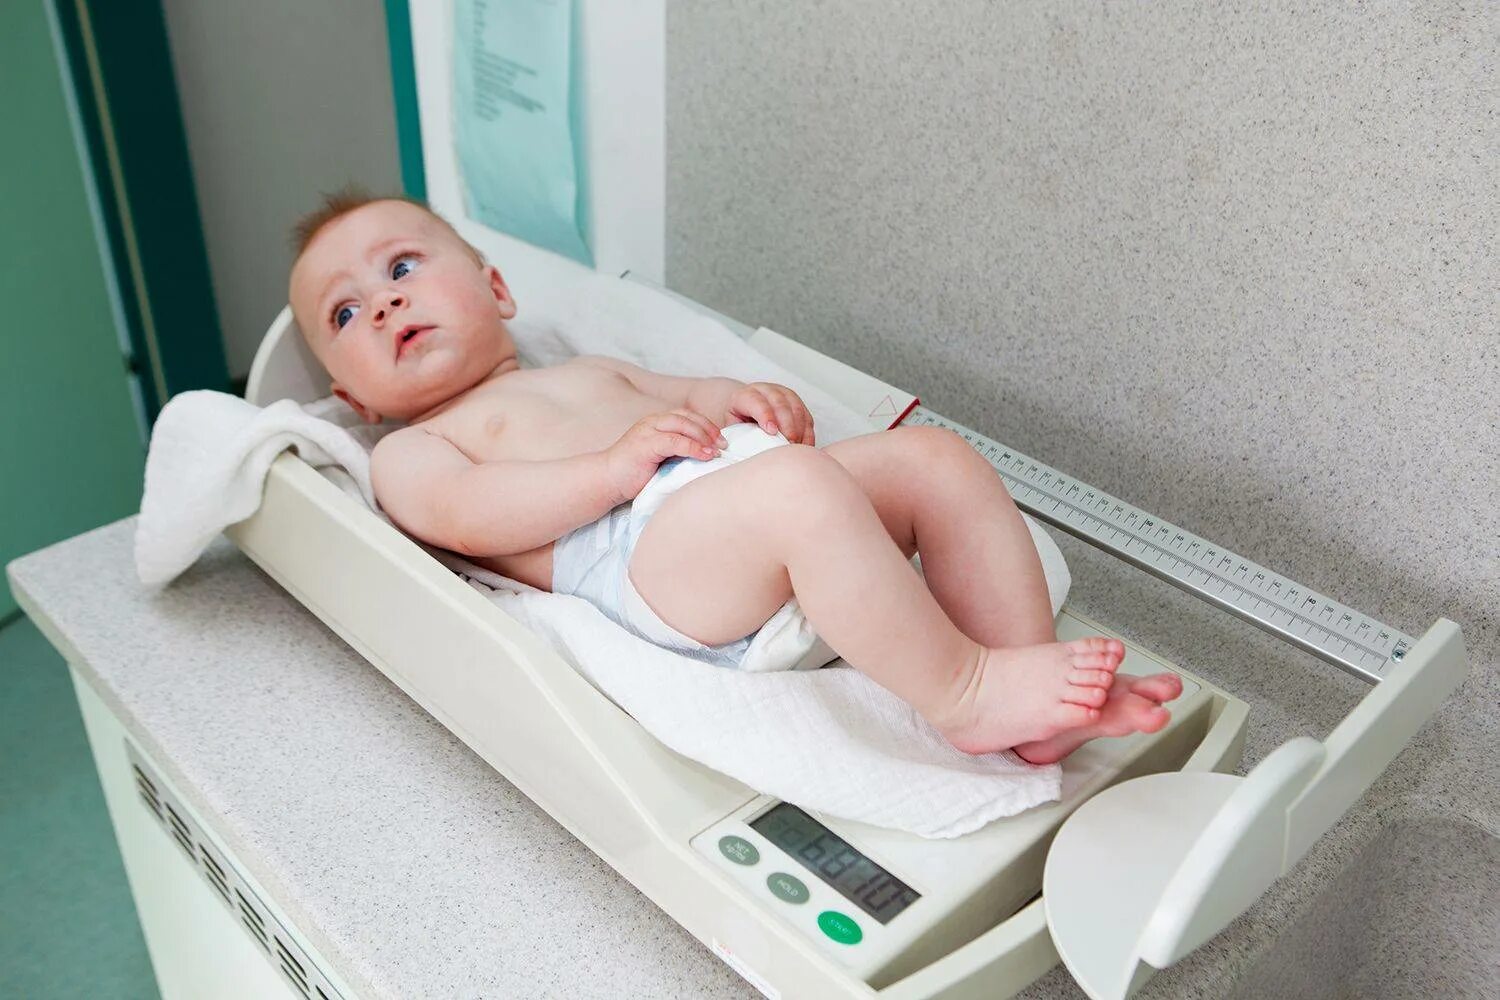 Тела новорожденных в новой москве. Измерение роста новорожденного ребенка. Измерение роста грудного ребенка. Измерение массы тела новорожденного. Антропометрия новорожденных детей.